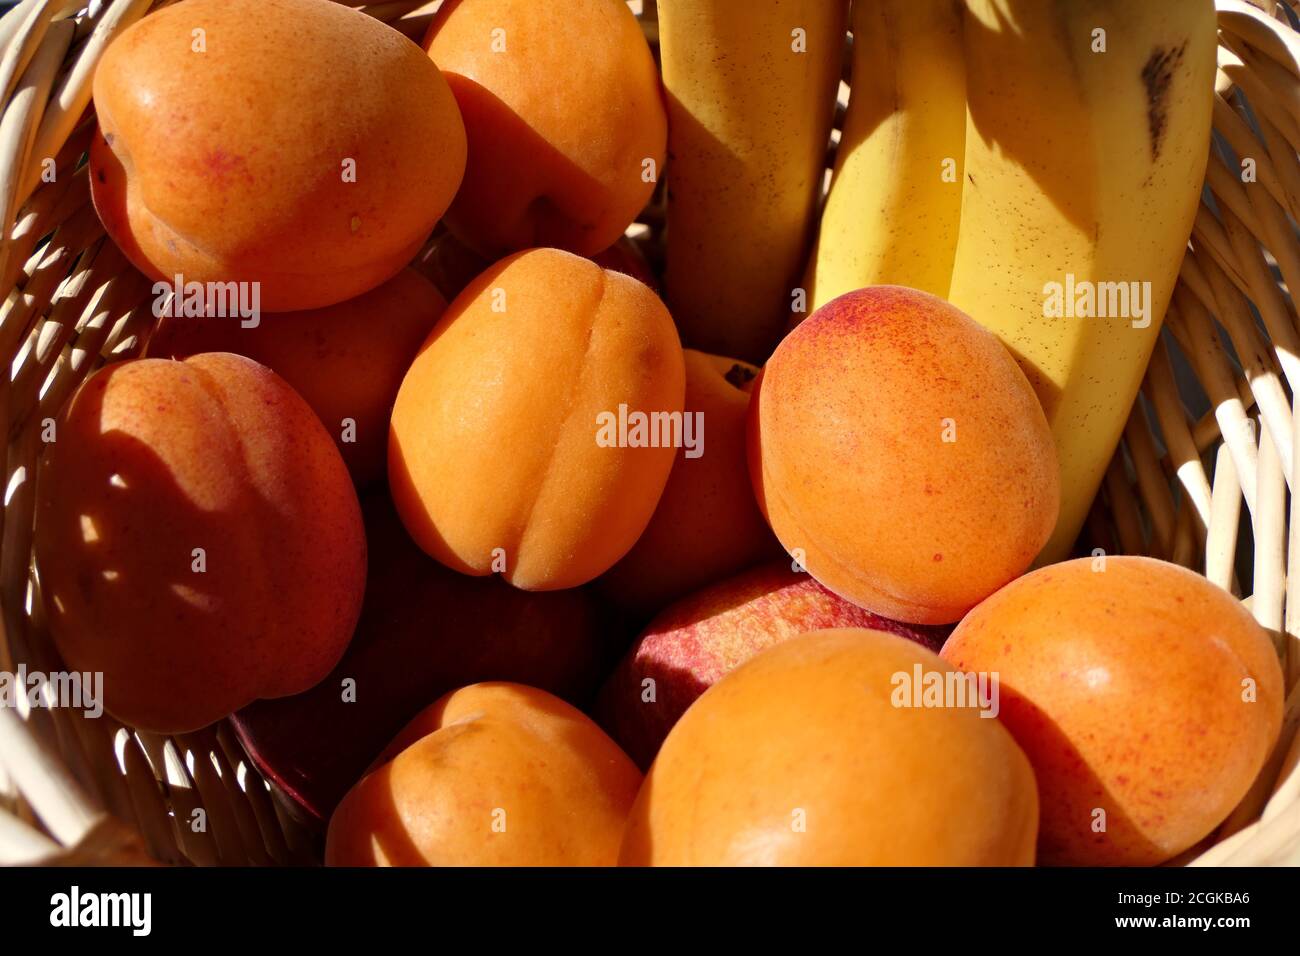 Früchte in einem hölzernen Obstkorb - Nahaufnahme gesunde frische Bananen, Aprikosen und Äpfel Stockfoto